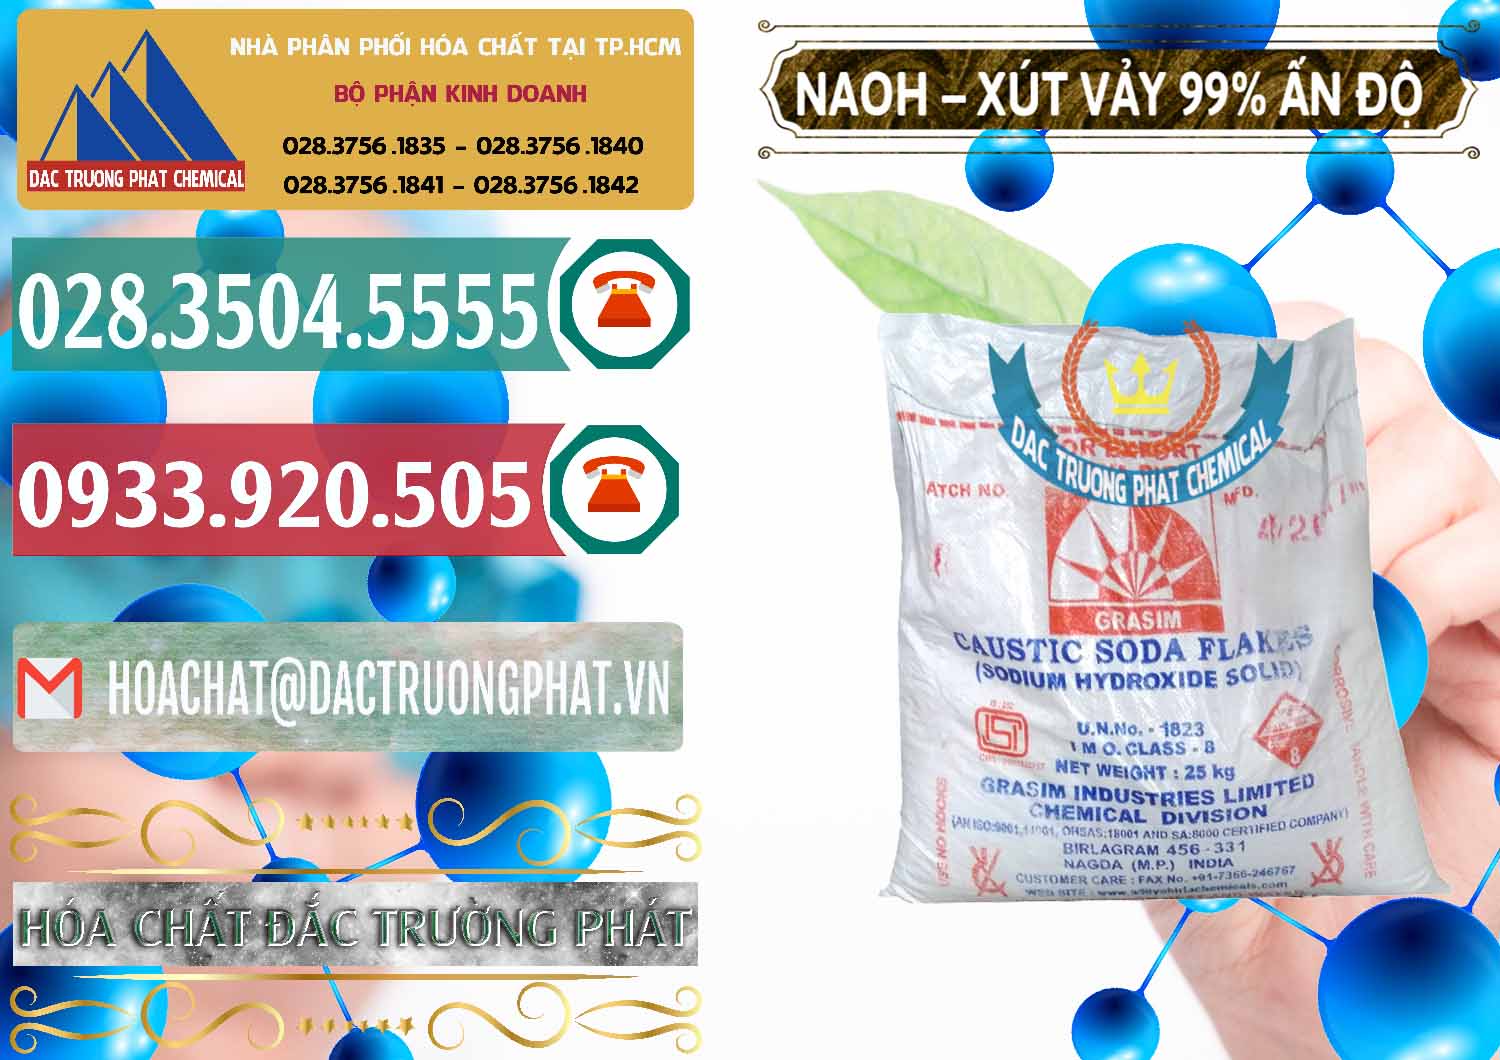 Nơi chuyên bán và phân phối Xút Vảy - NaOH Vảy 99% Aditya Birla Grasim Ấn Độ India - 0171 - Công ty chuyên cung cấp _ kinh doanh hóa chất tại TP.HCM - muabanhoachat.vn